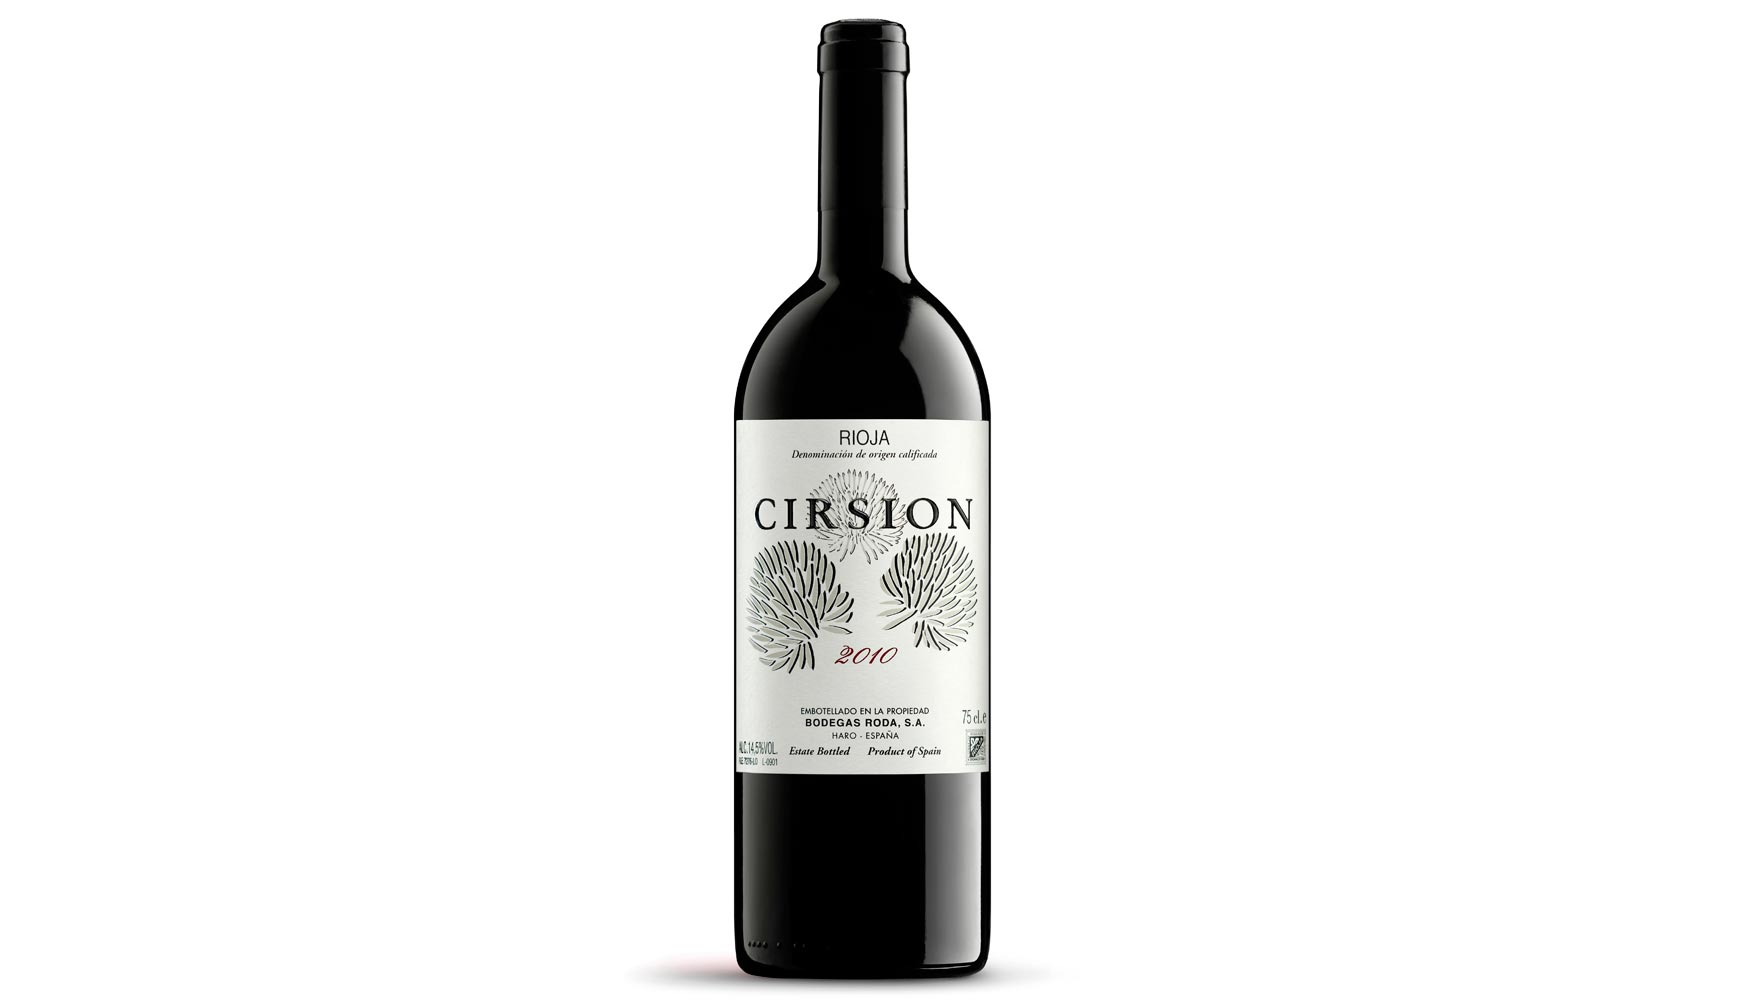 Cirsion 2010, campen en la cata de los cinco mejores vinos de Espaa